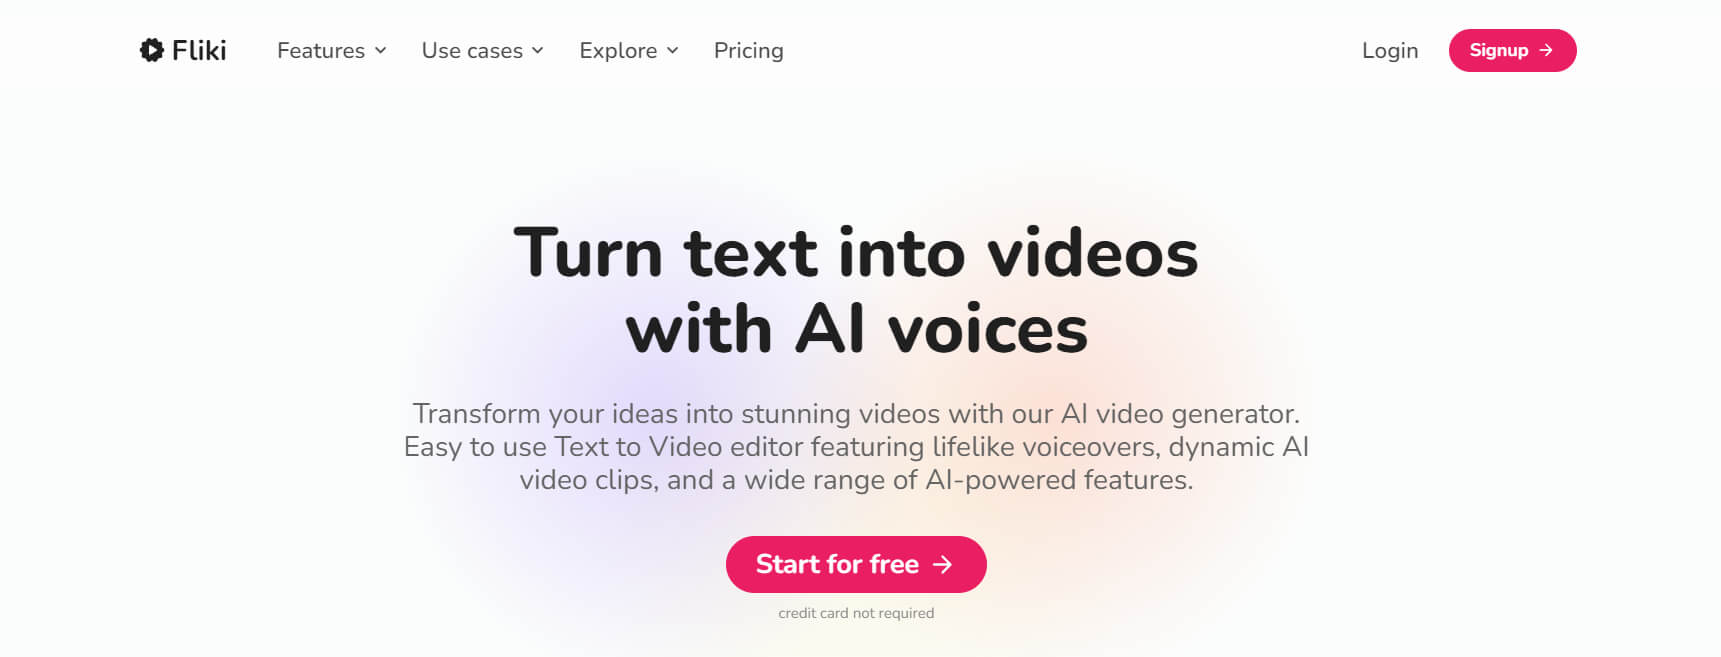  Künstliche Intelligenz-betriebener Video-Generator verwandelt Text in lebensechte Videos. 